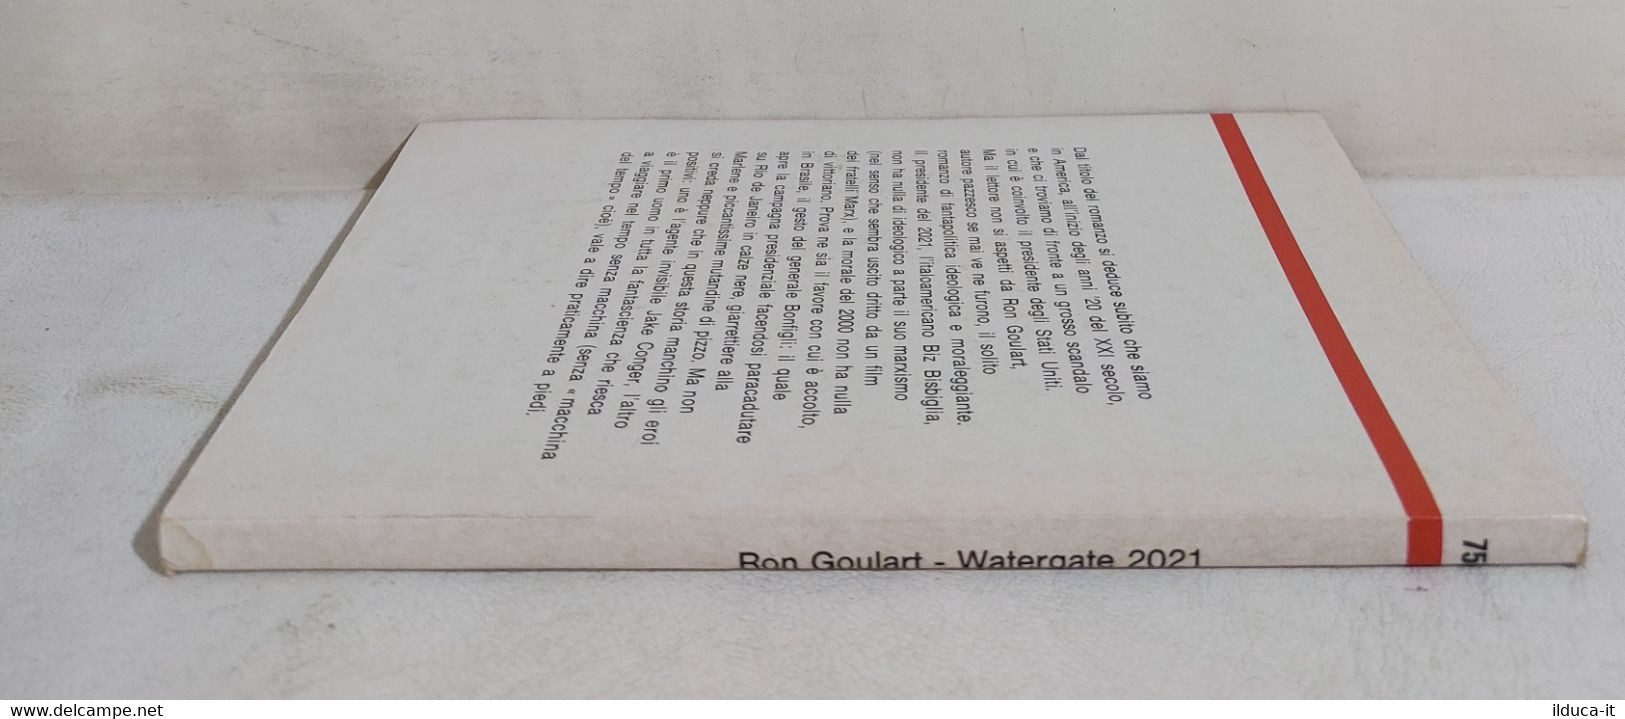 I111753 Urania N. 753 - Ron Goulart - Watergate 2021 - Mondadori 1978 - Fantascienza E Fantasia